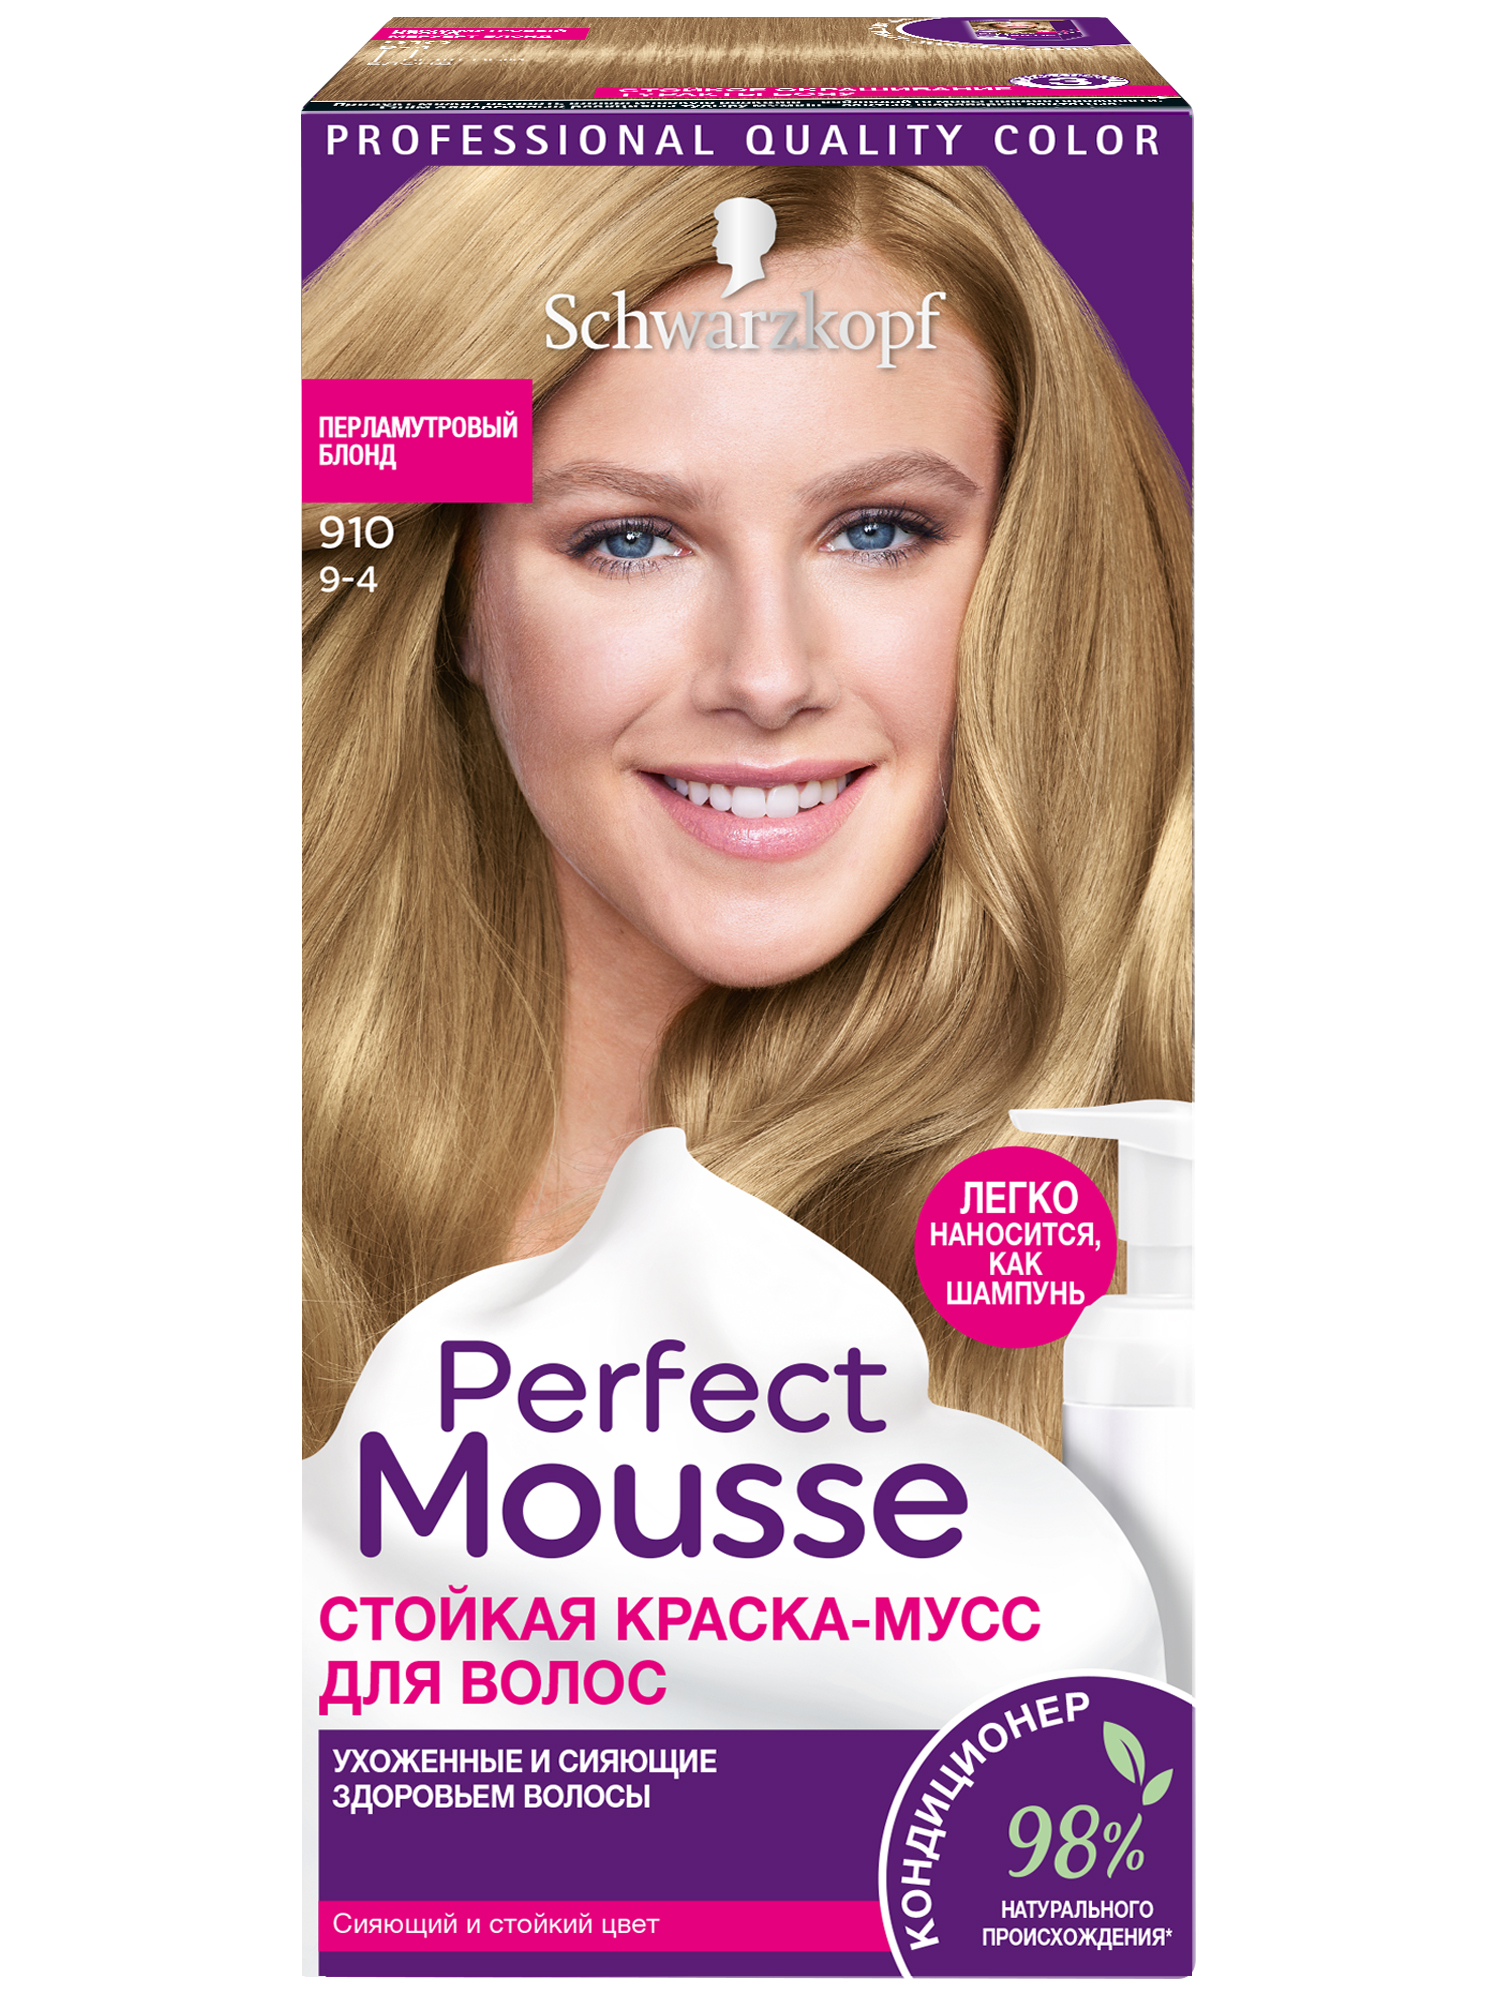 Купить Стойкая краска-Мусс Perfect Mousse для укладки волос, 910 92, 5 мл